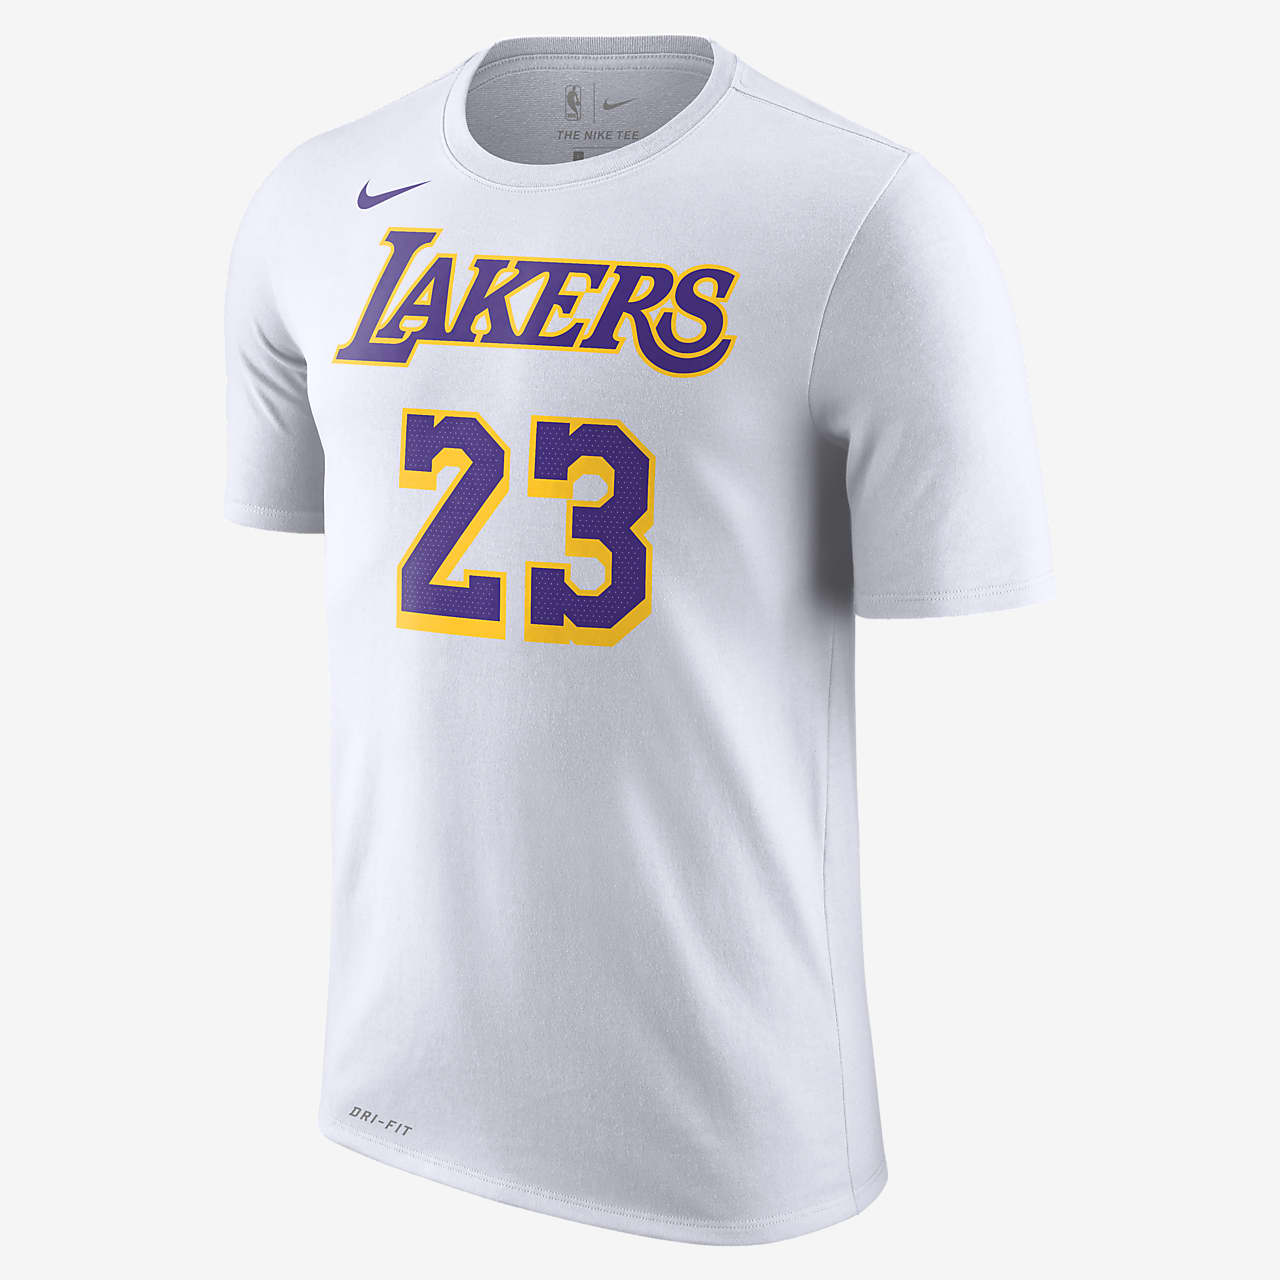  洛杉矶湖人队 (LeBron James) Nike Dri-FIT NBA 男子T恤